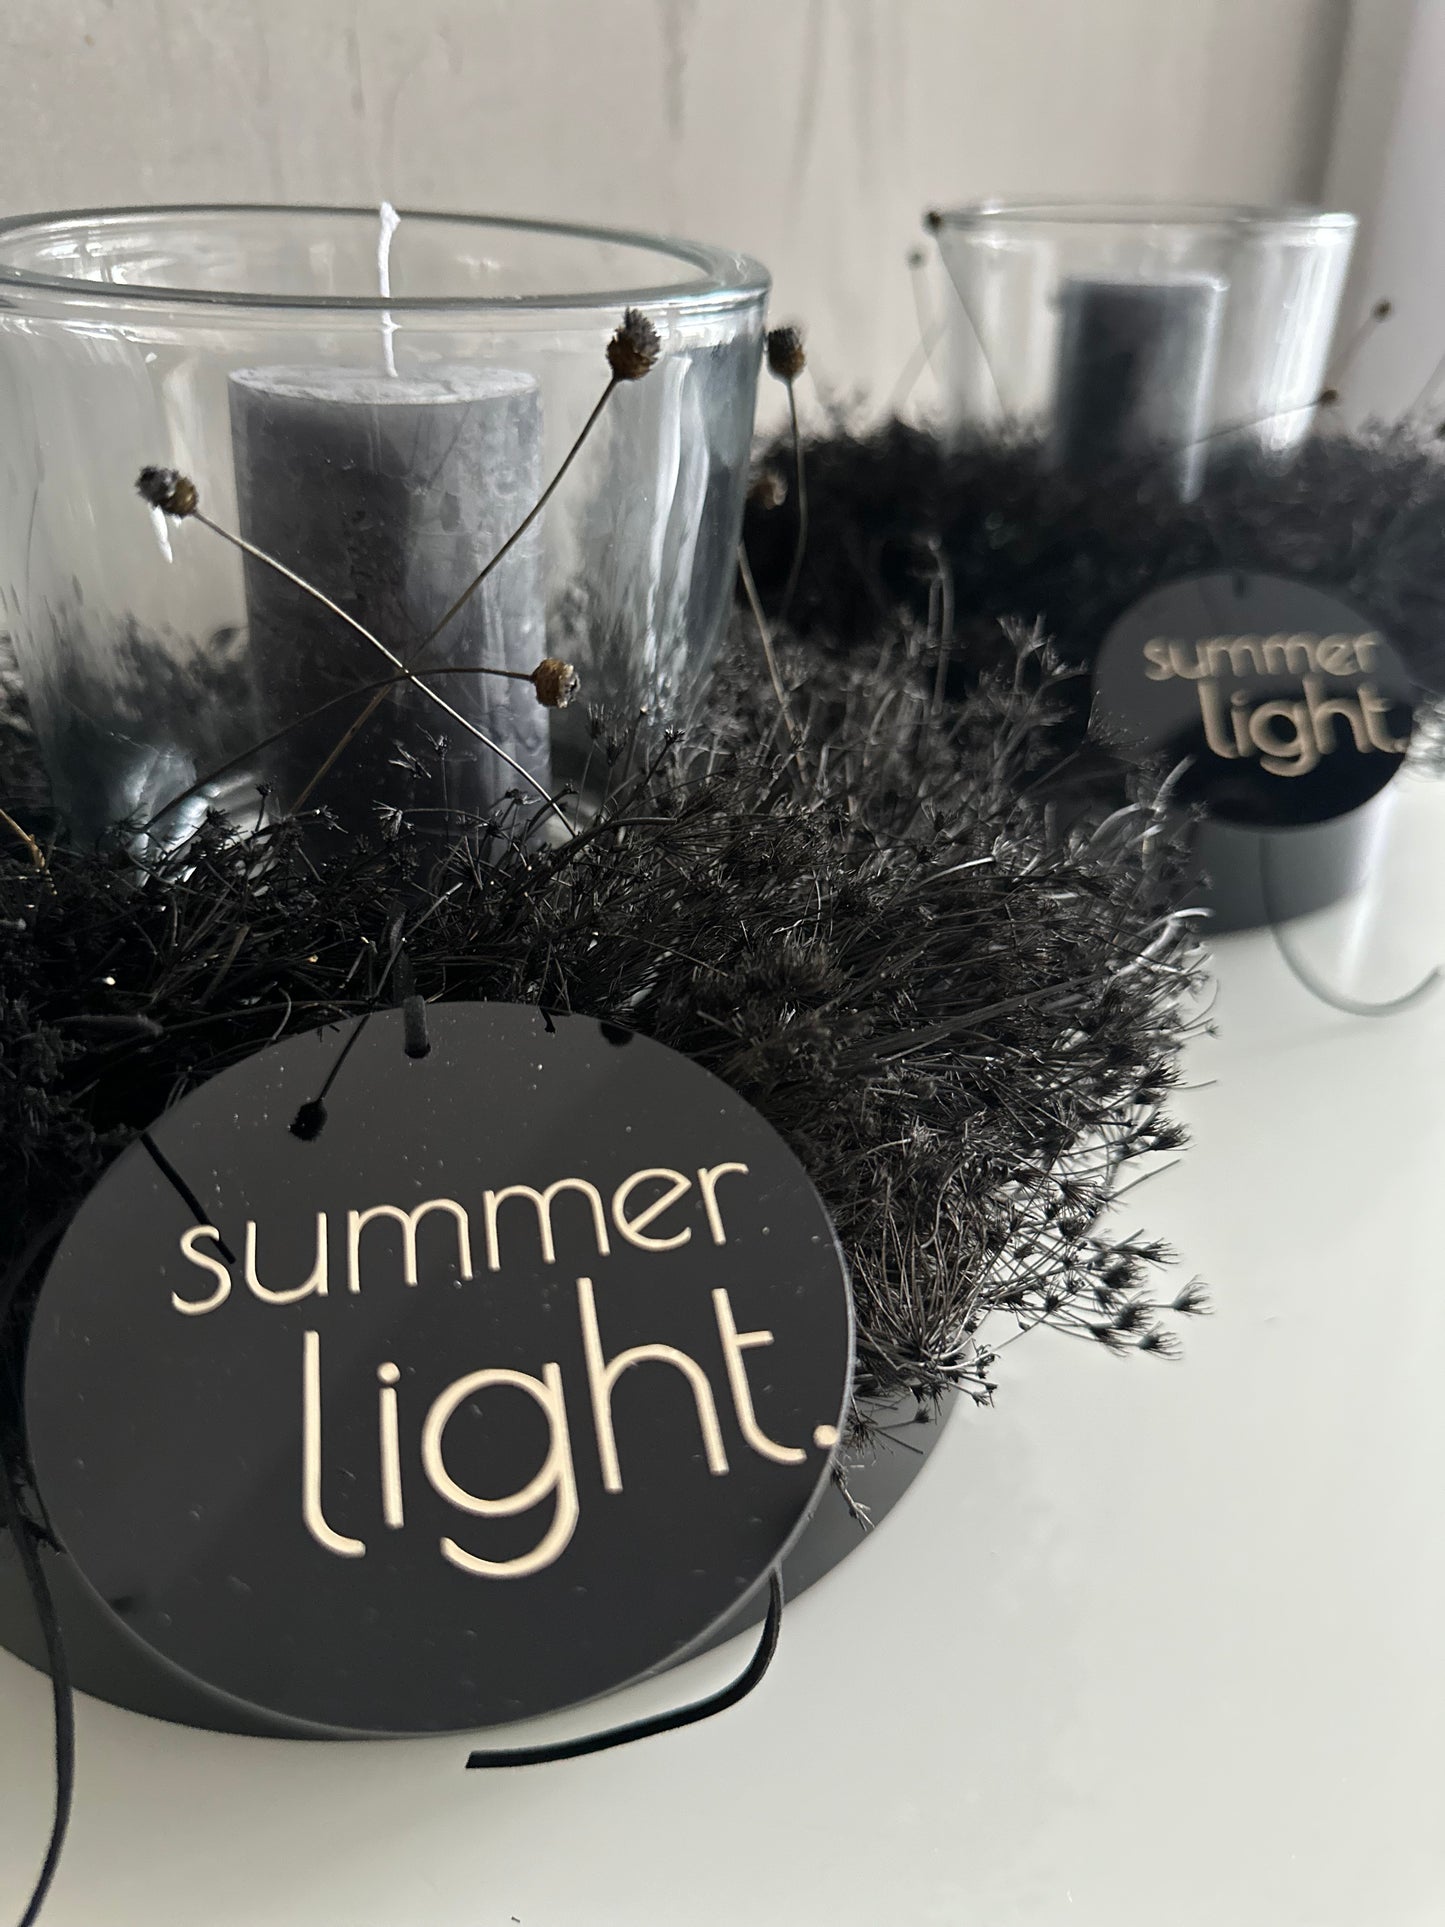 Summer light - black